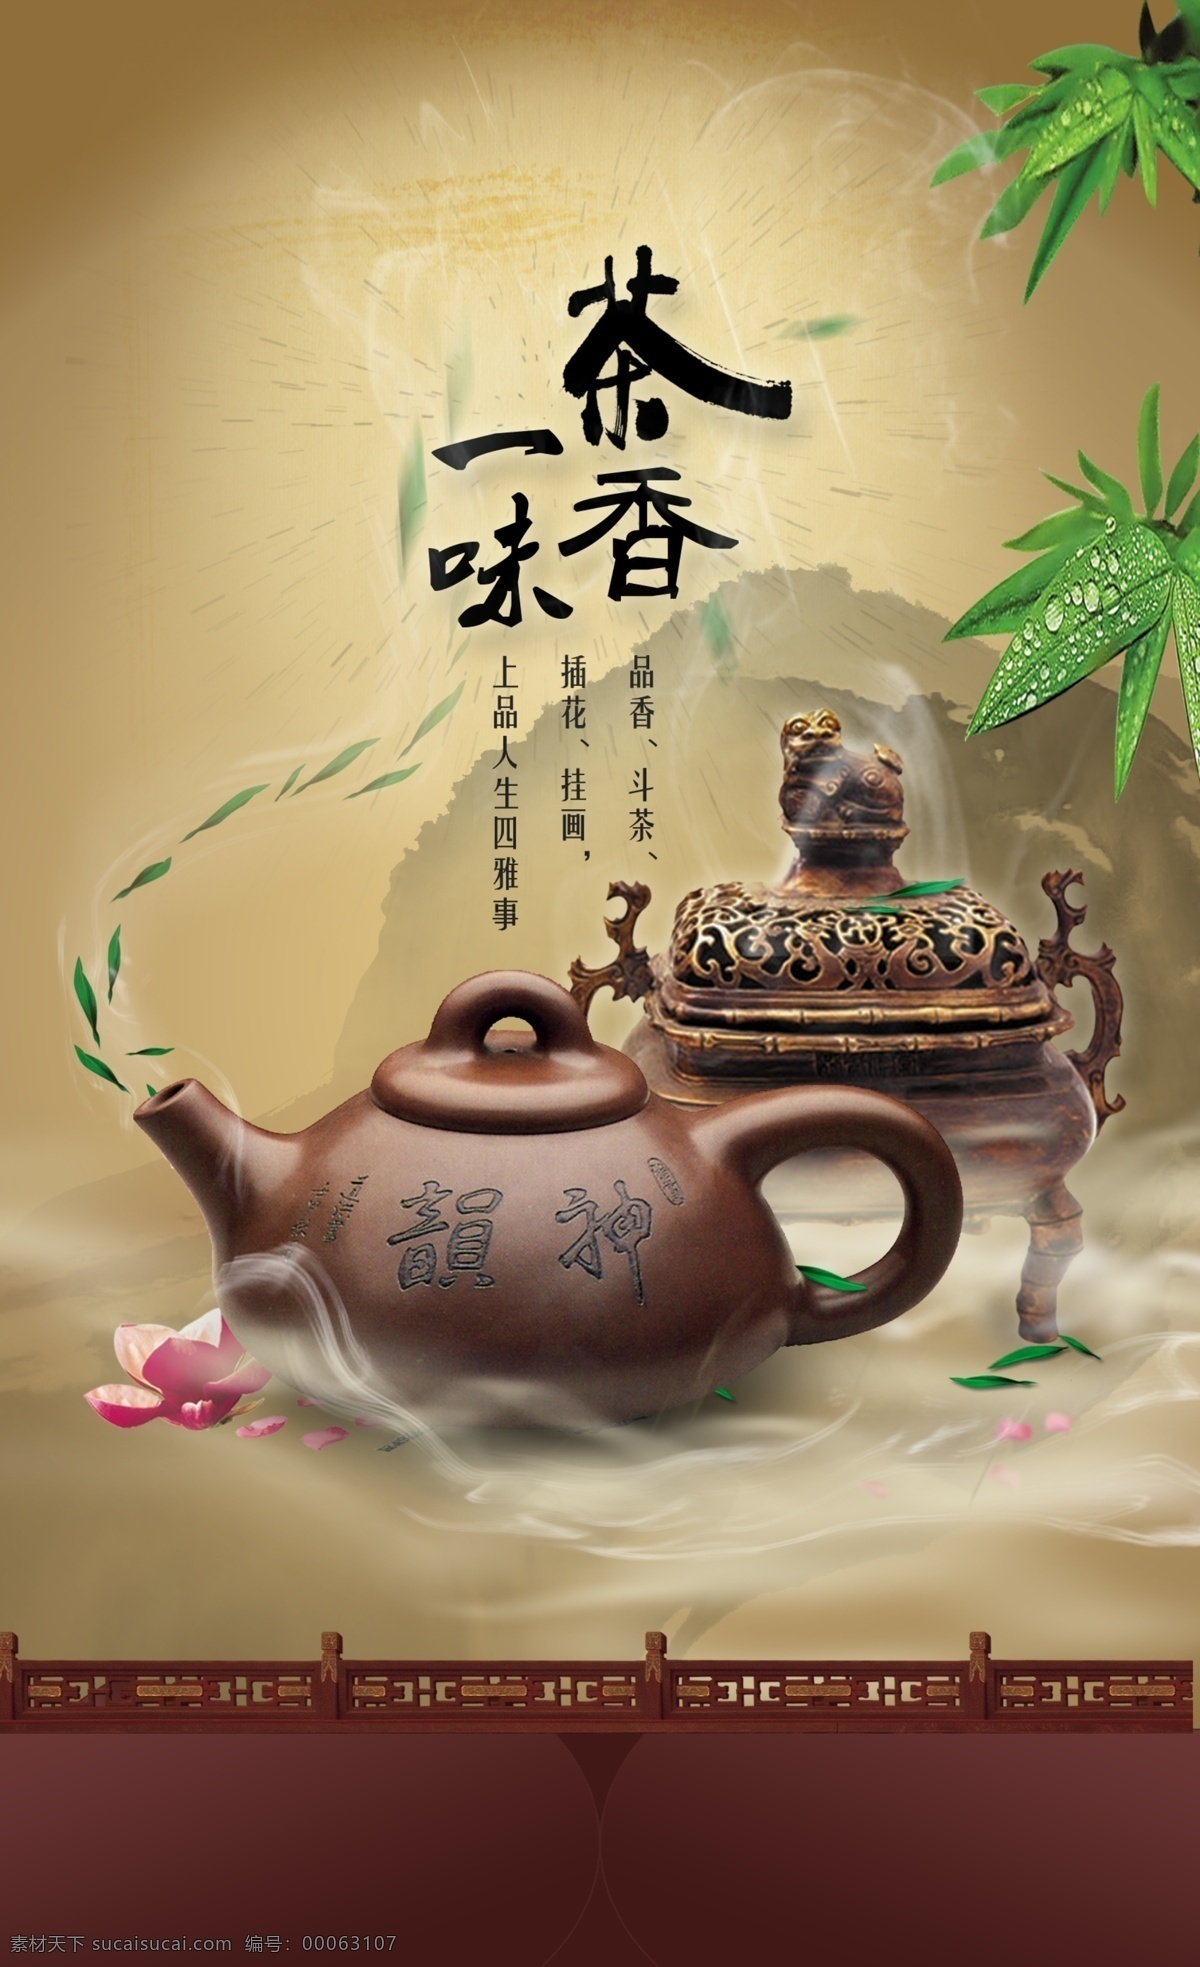 茶叶 psd素材 茶壶 茶叶海报 水墨 香炉 中国风 竹叶 psd源文件